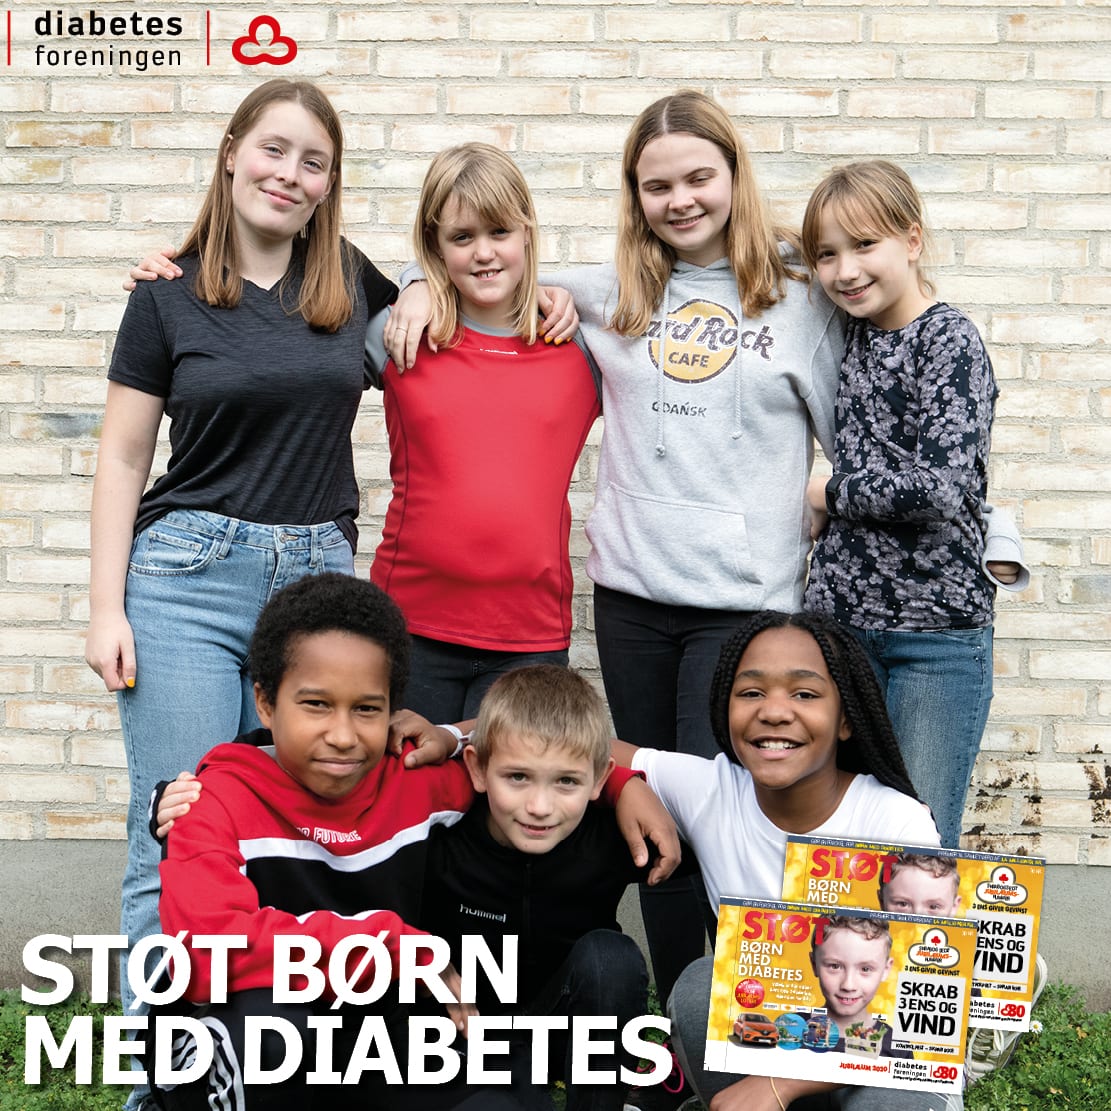 Tjen penge på skrabelodssalg – mens du støtter børn med diabetes